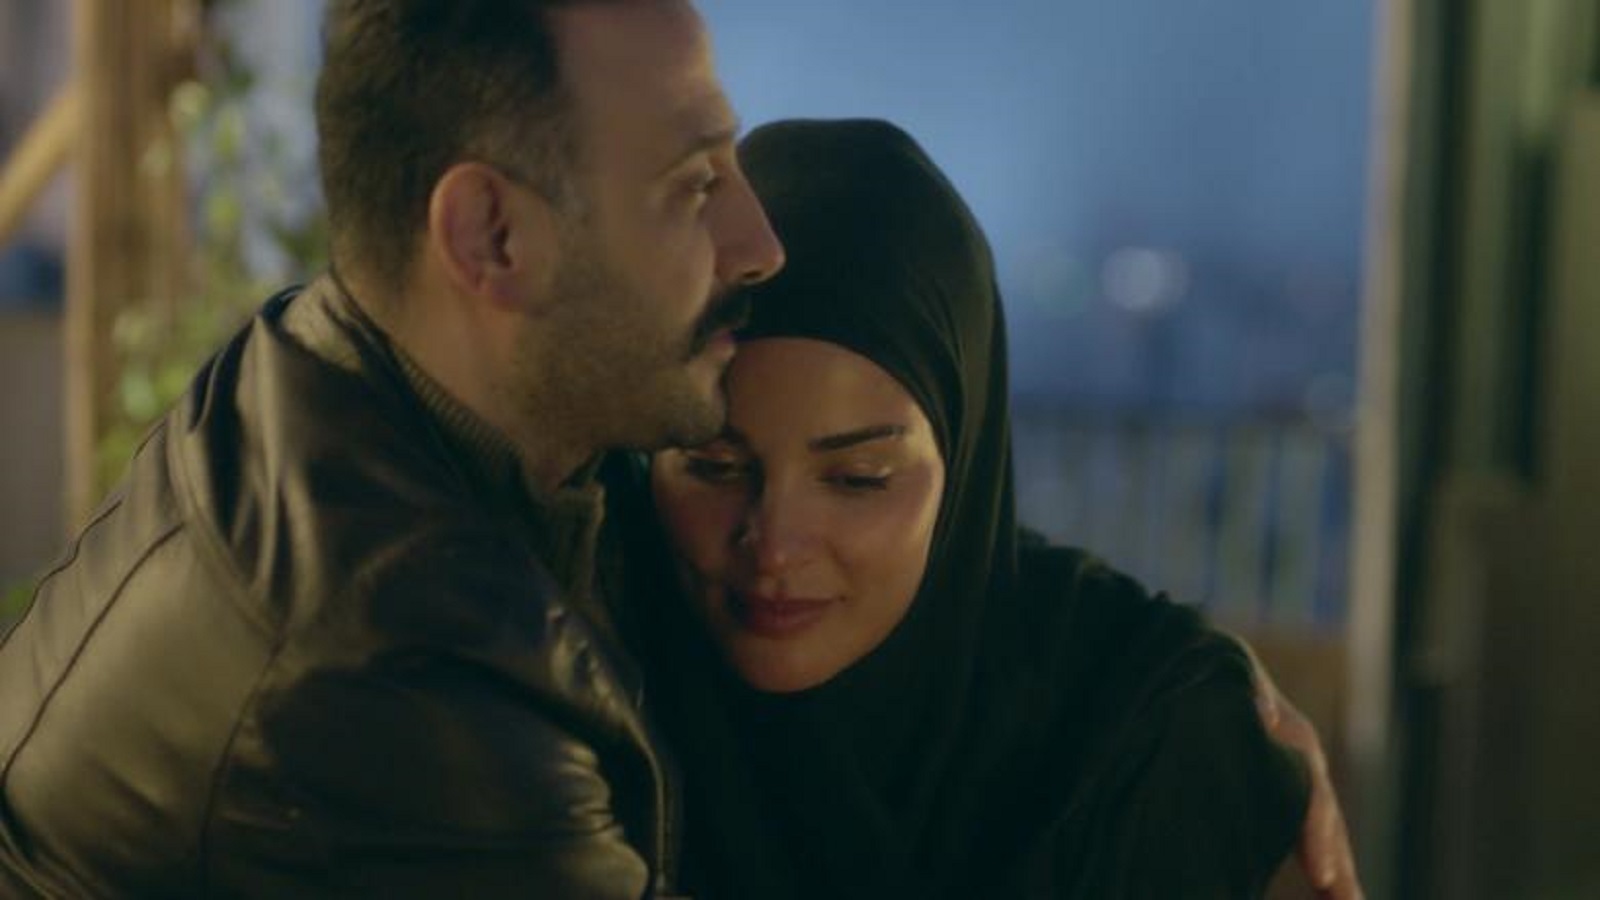 في مسلسل "عشرين عشرين" (بطولة نادين نجيم وقصي خولي) سمّينا الأشياء كما هي، الإسلام والحجاب 